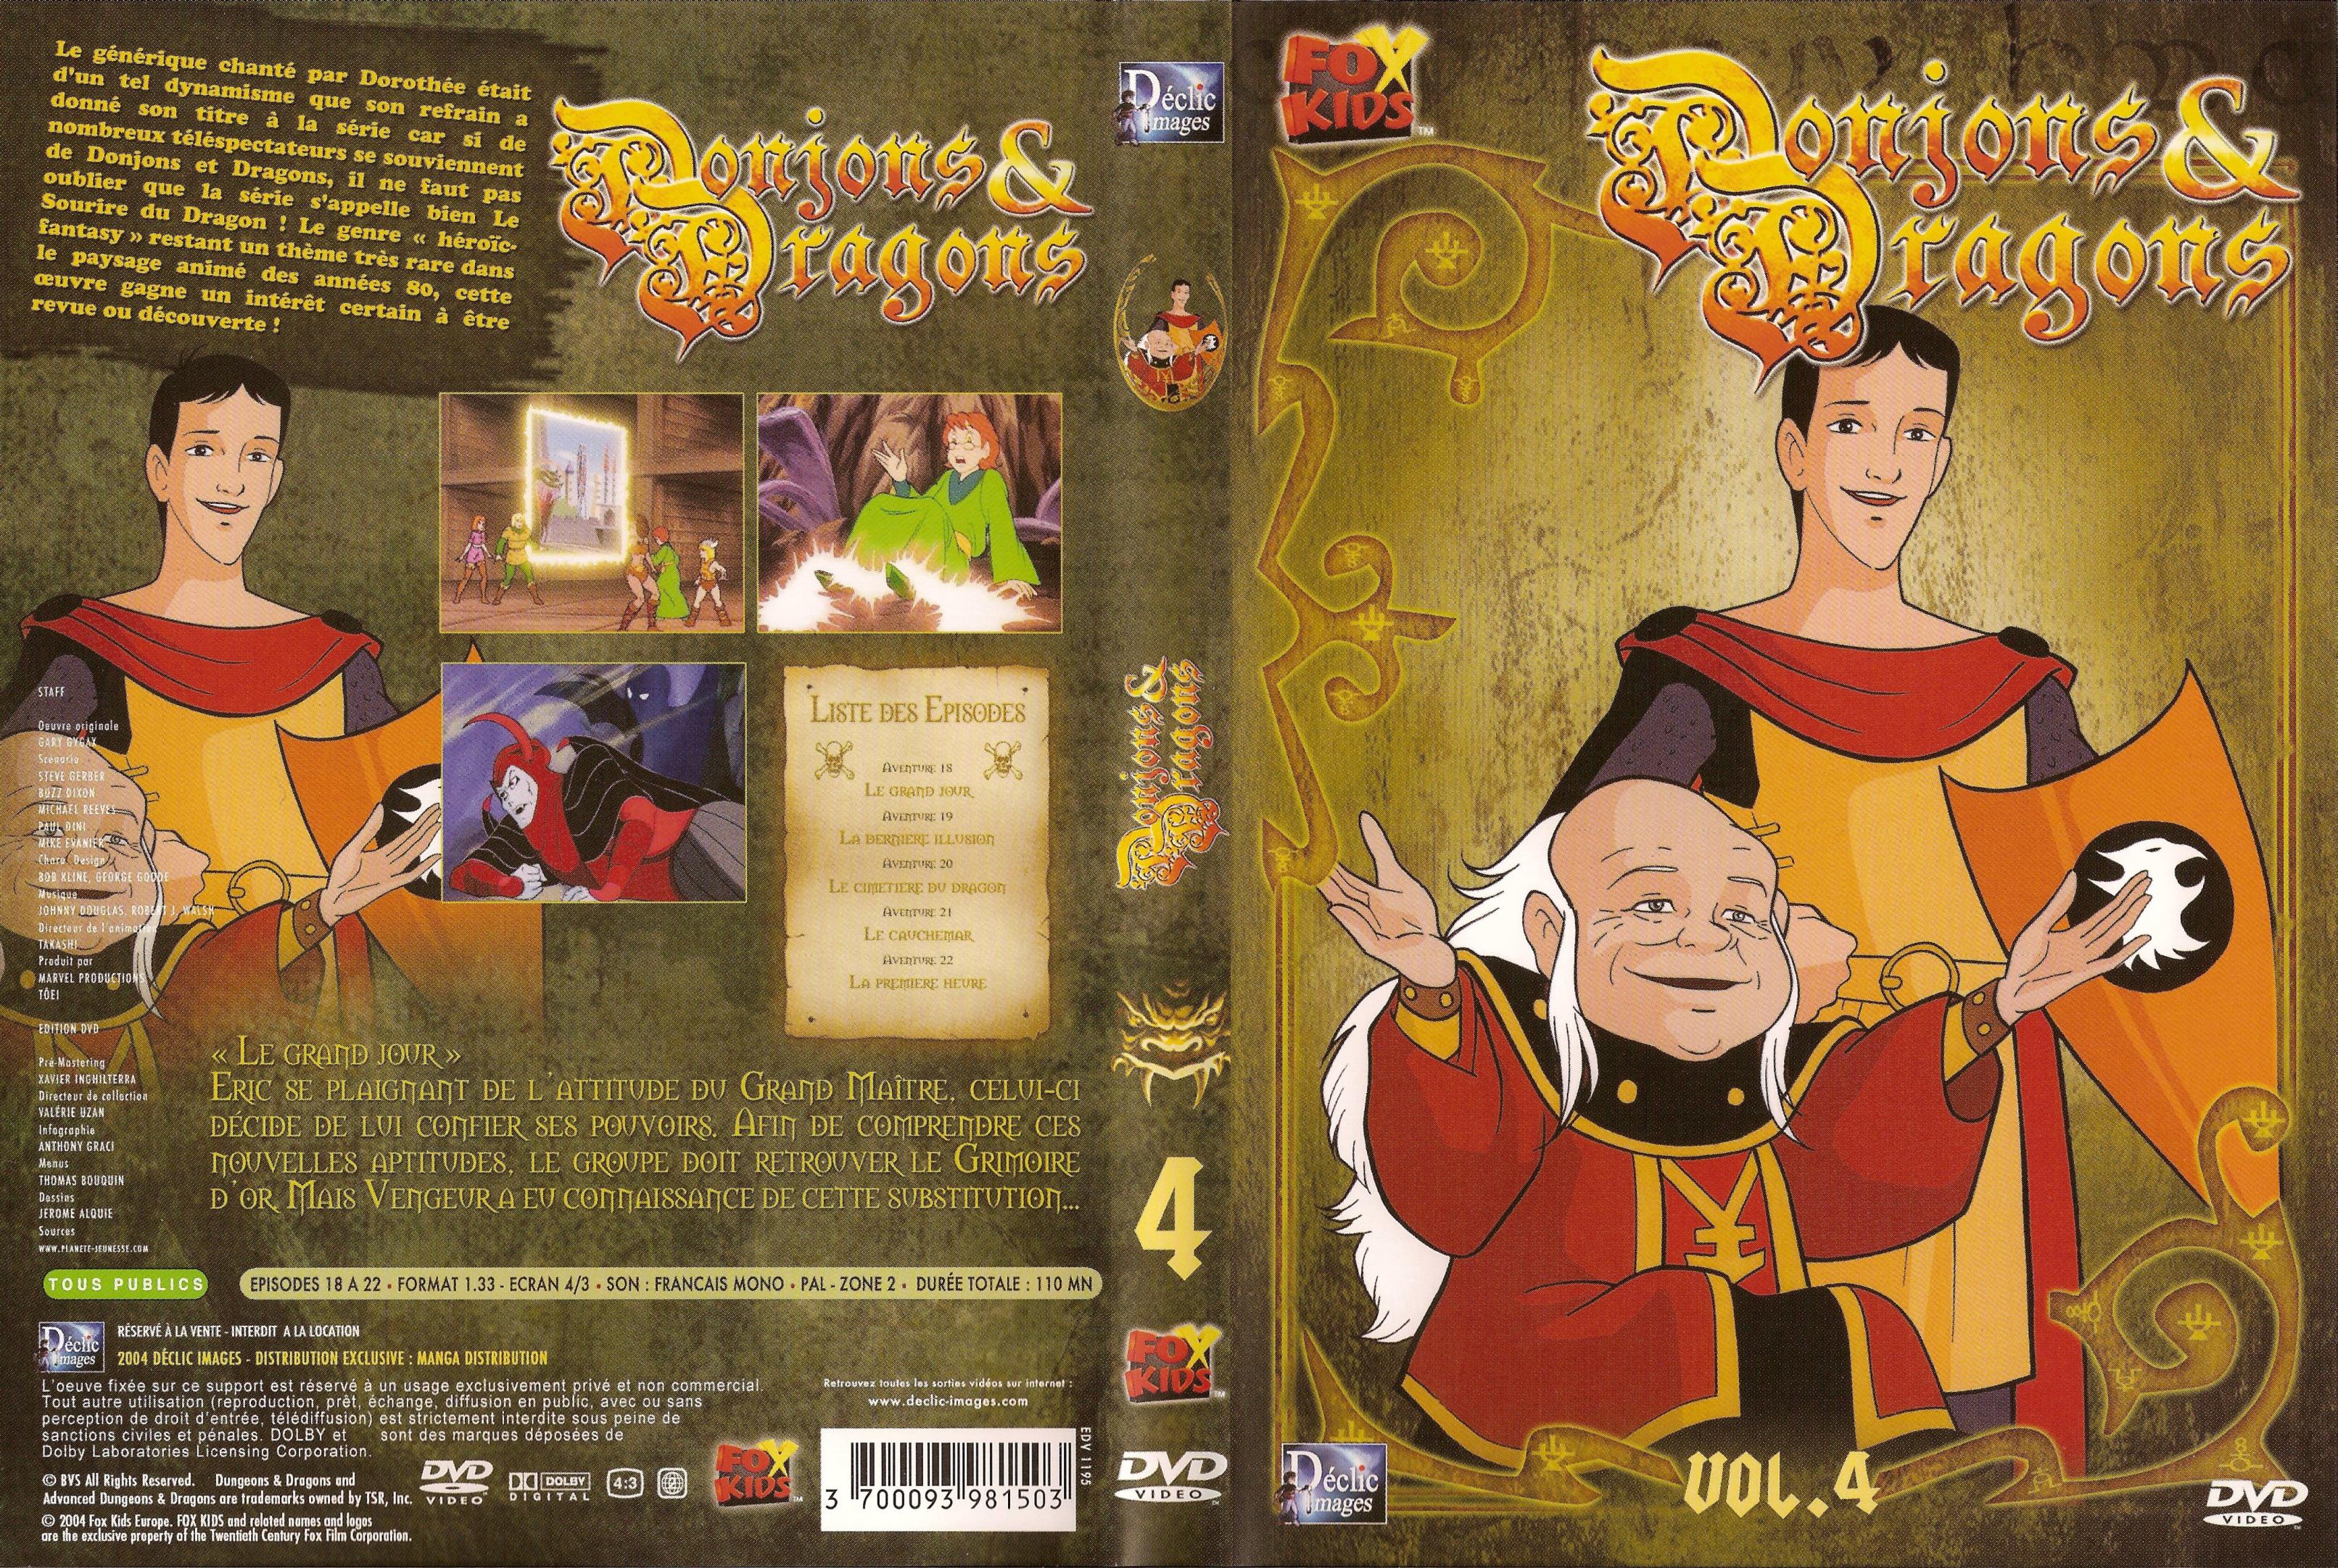 Jaquette DVD Donjons et dragons vol 4